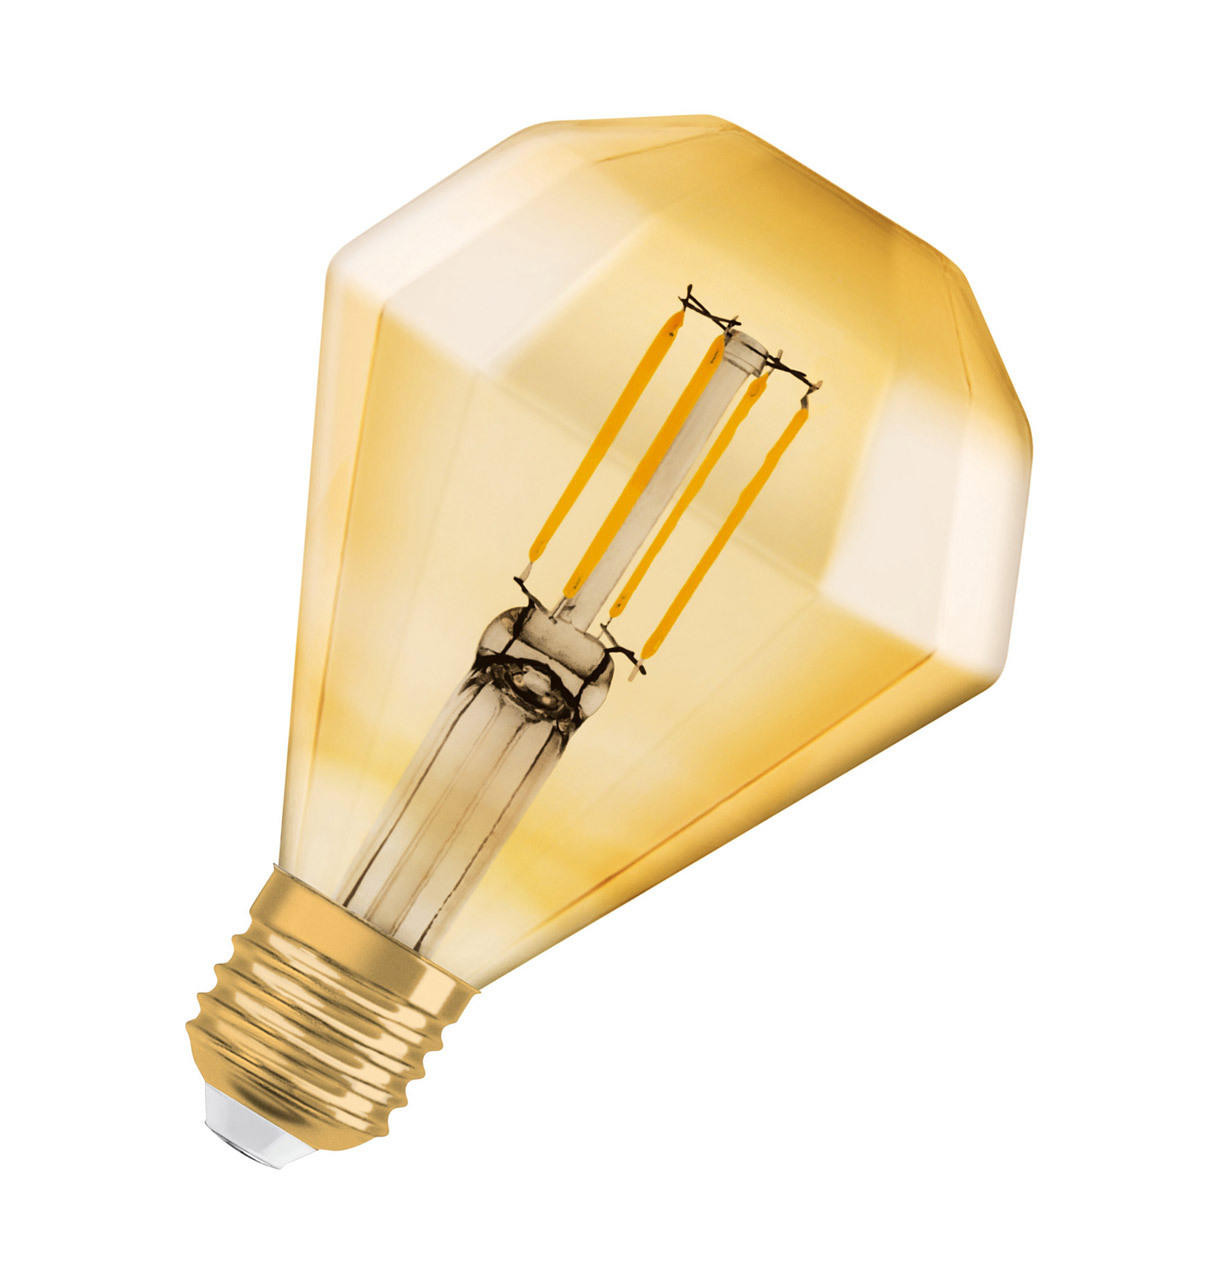 Ampoule LED à filament Globe double 4 W Dimmable - Paulmann